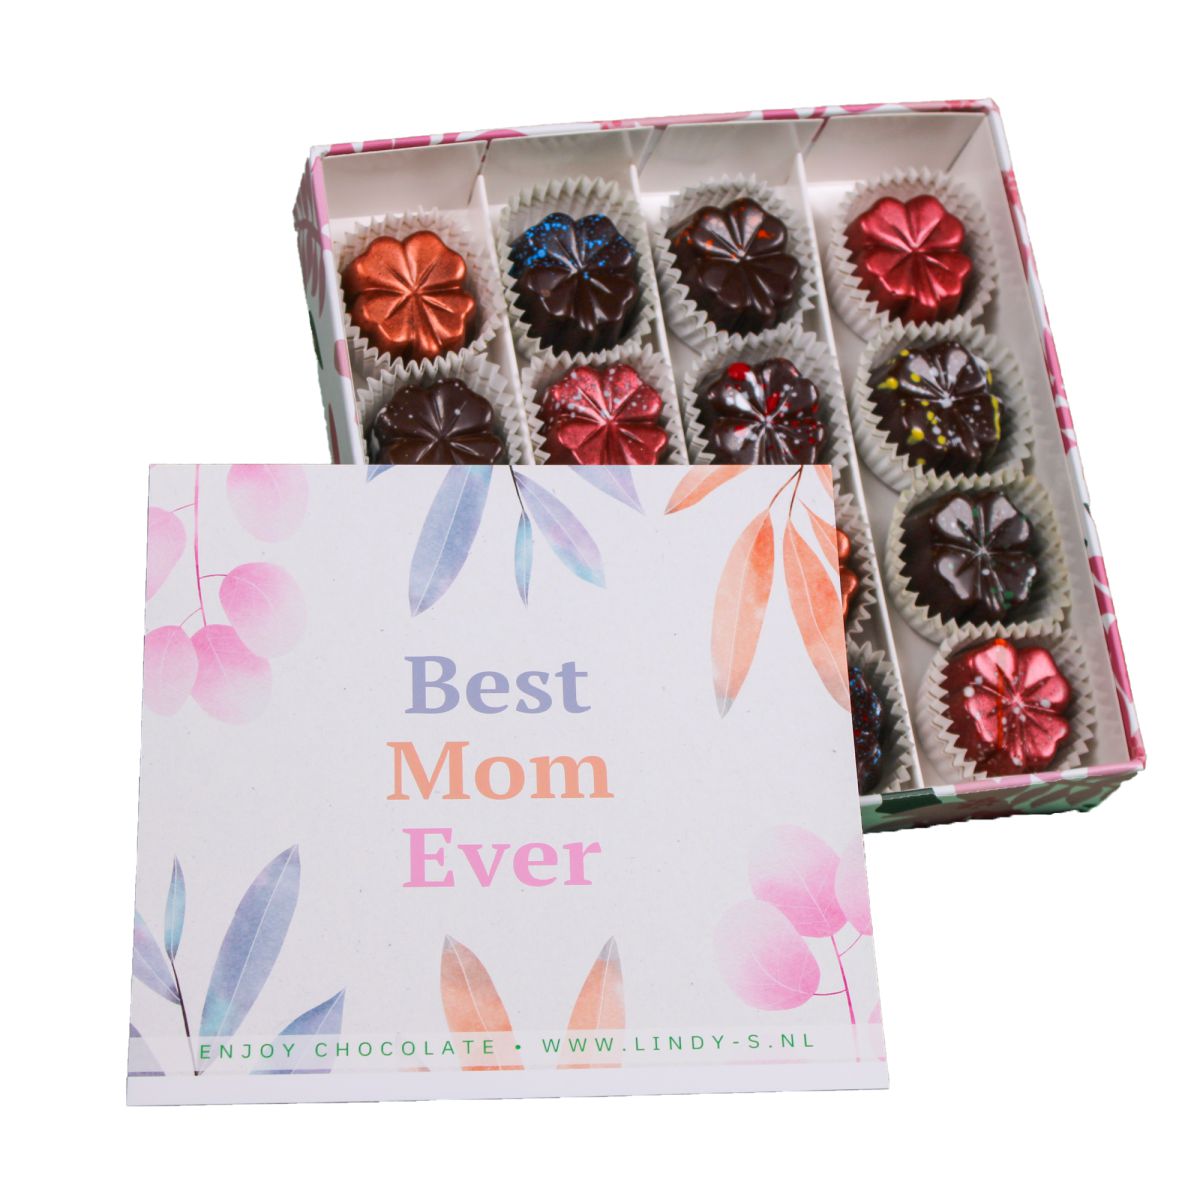  moederdag vegan luxe geschenkdoos 16 smaken bonbons